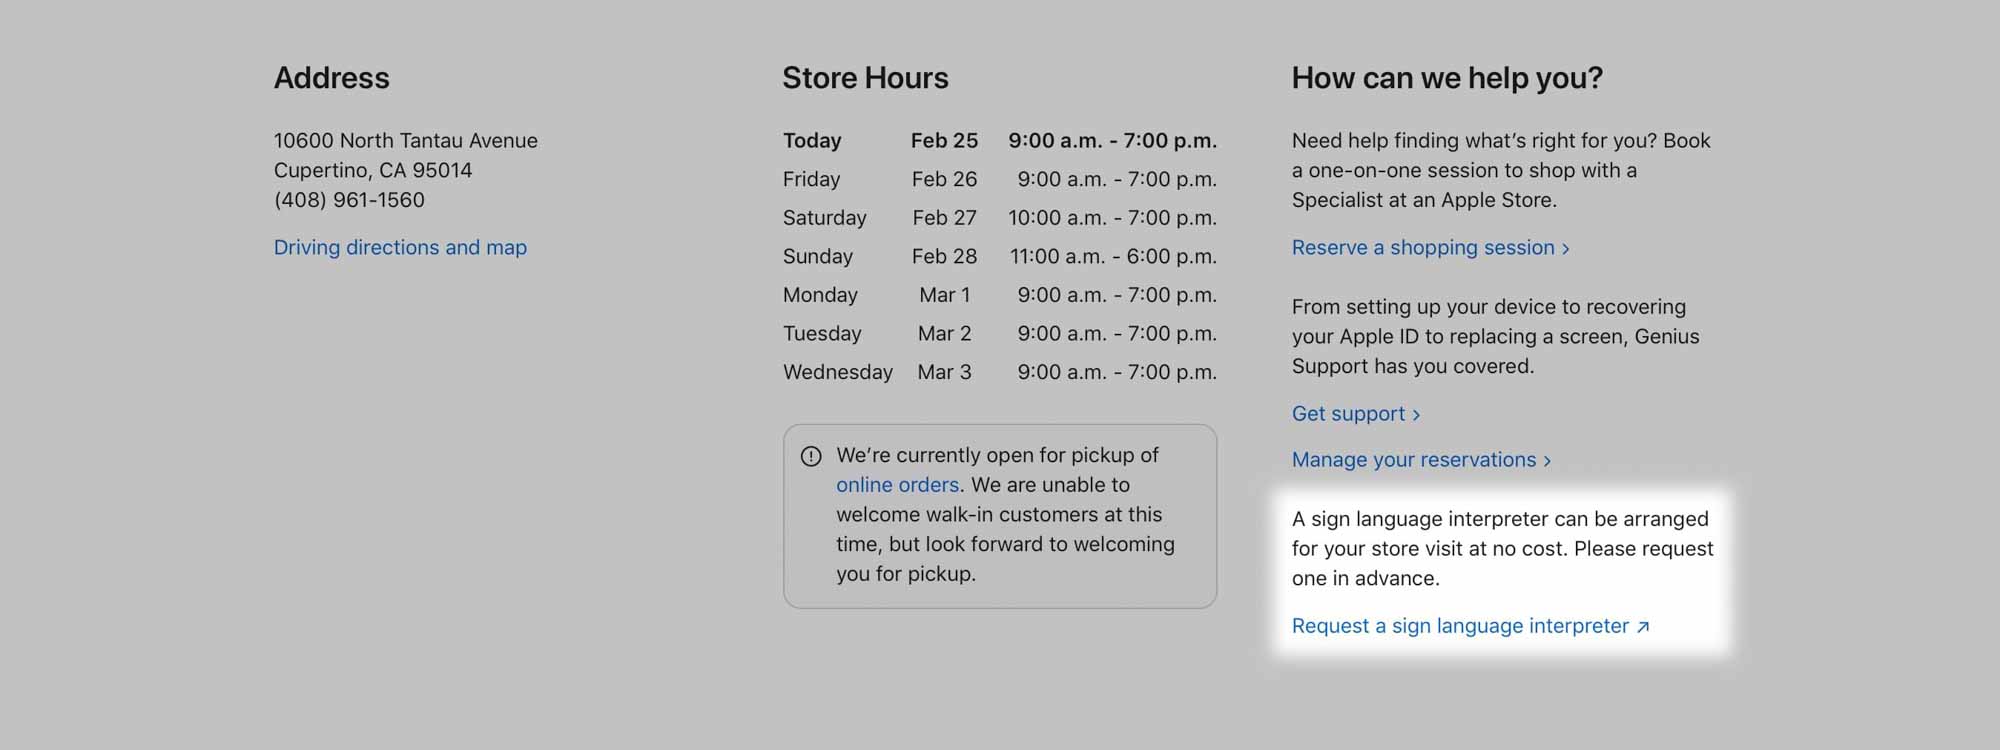 Магазины Apple, предлагающие бесплатные встречи с переводчиком с языка жестов